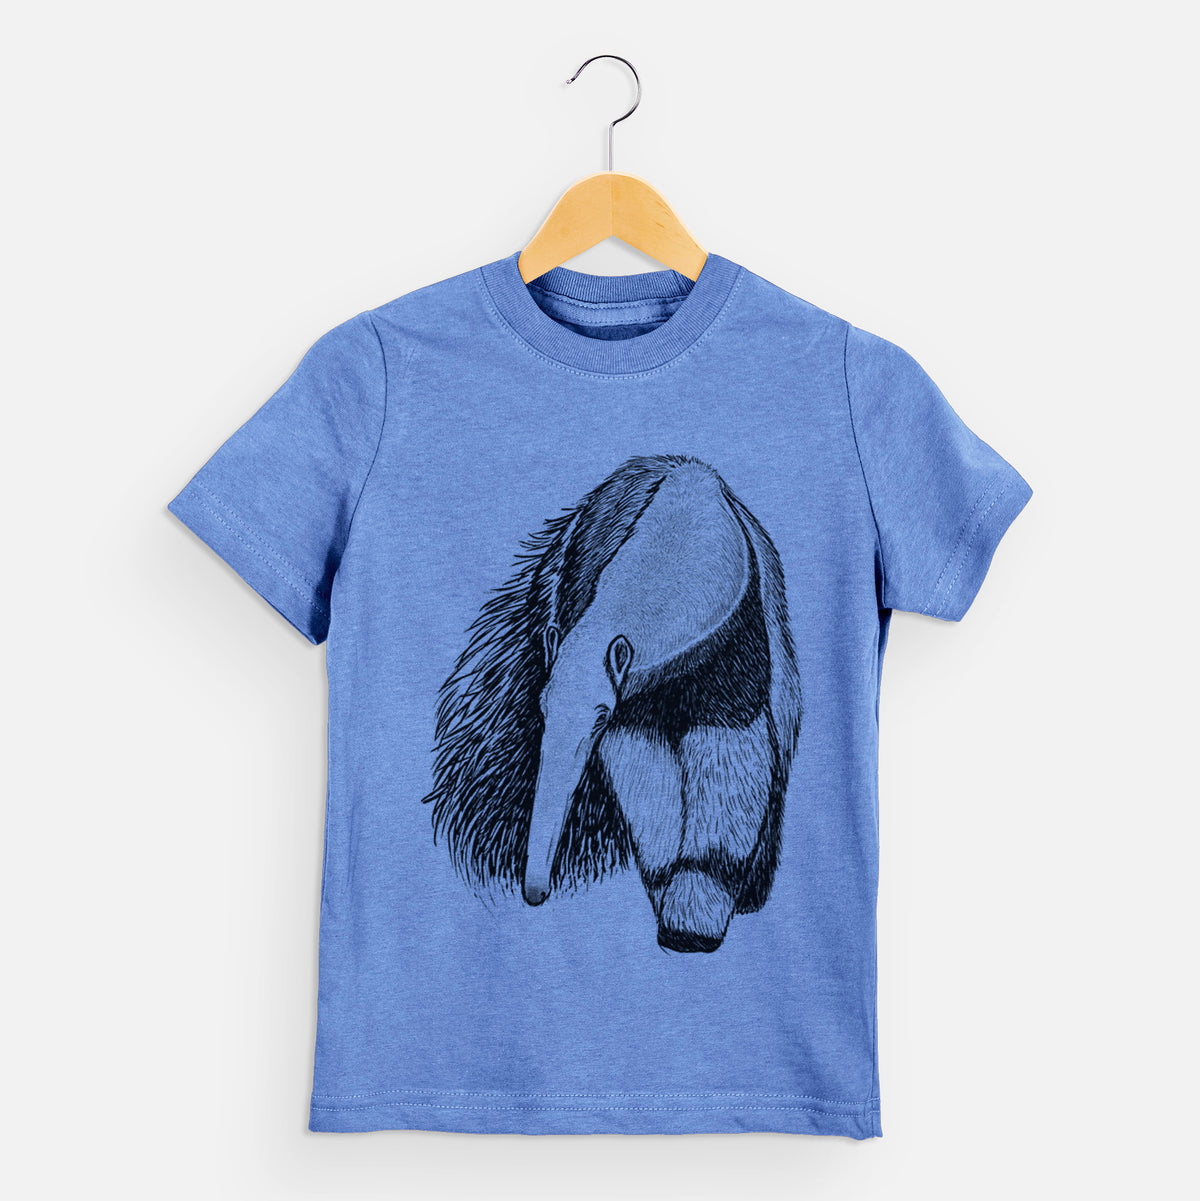 Giant Anteater - Myrmecophaga tridactyla - Kids Shirt